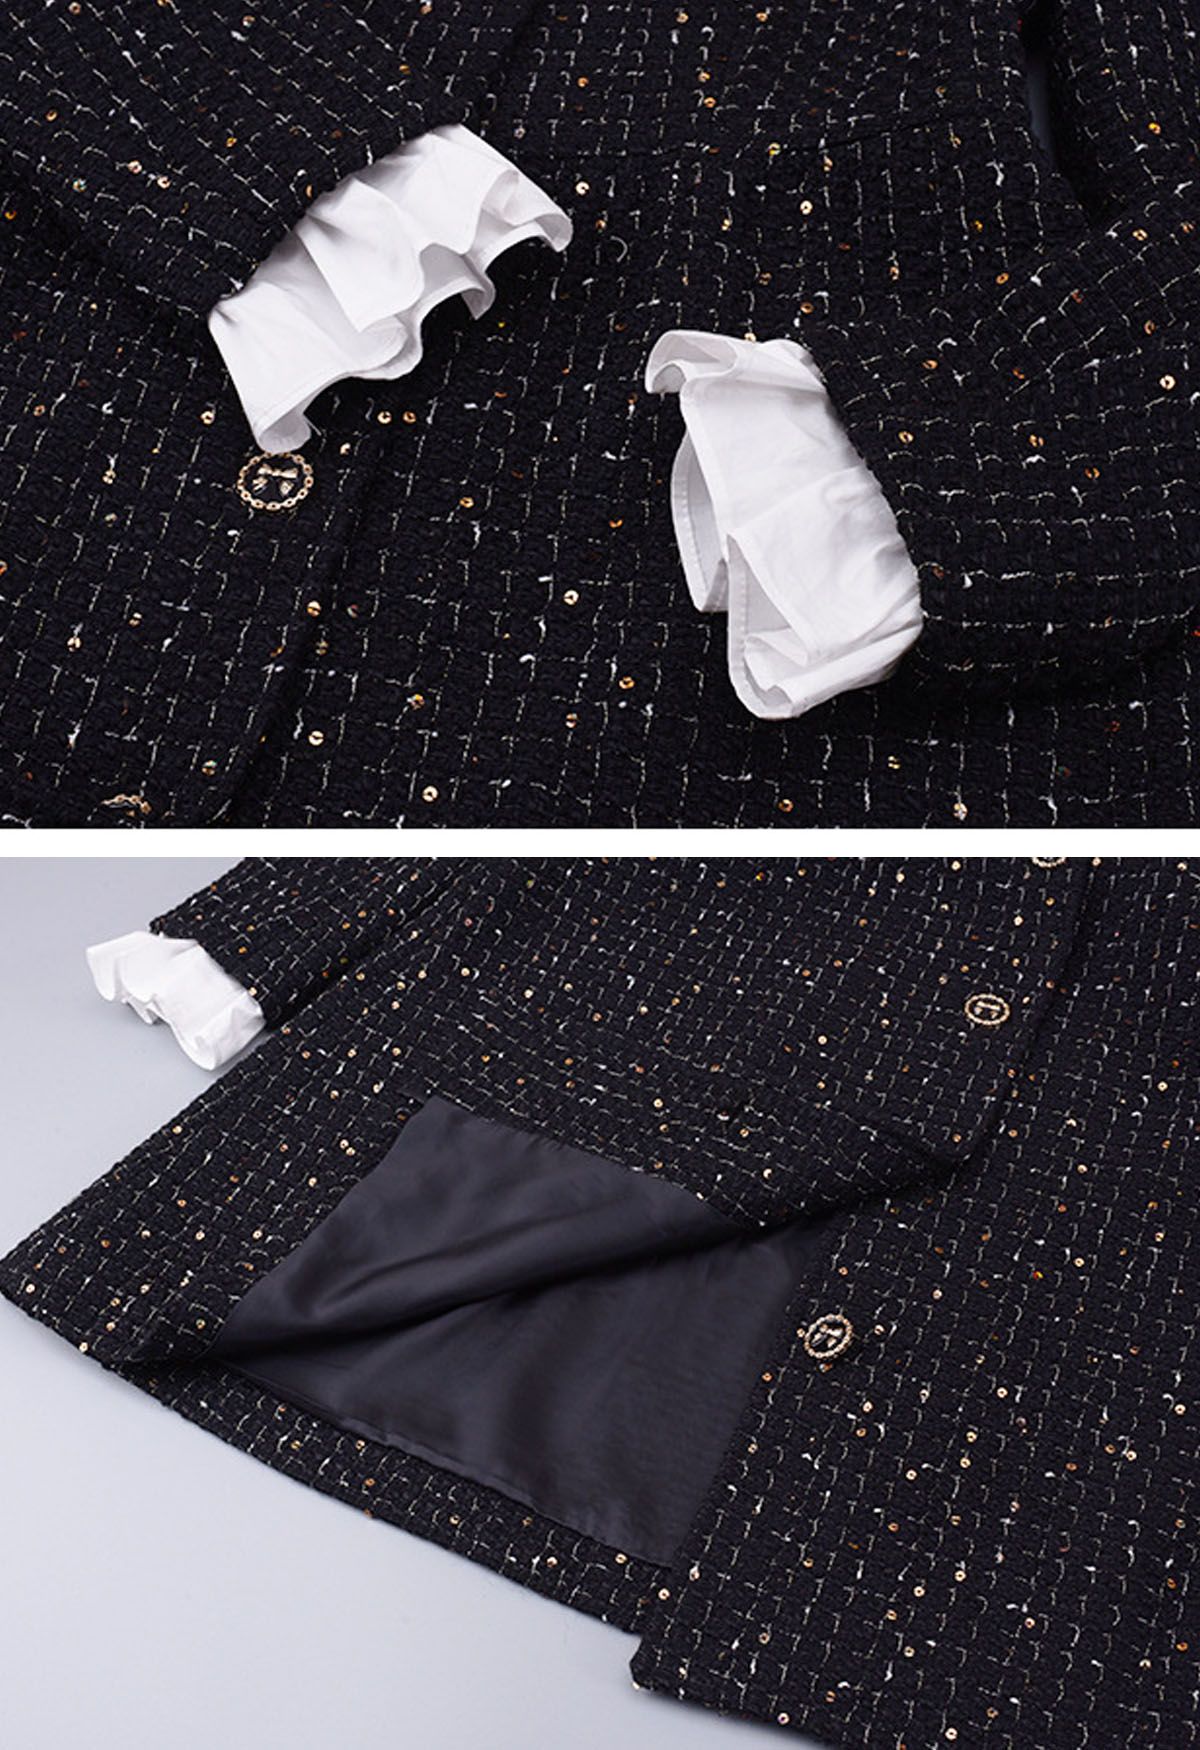 Contrast Ruffle Trim Sequin Grid Tweed Coat Dress